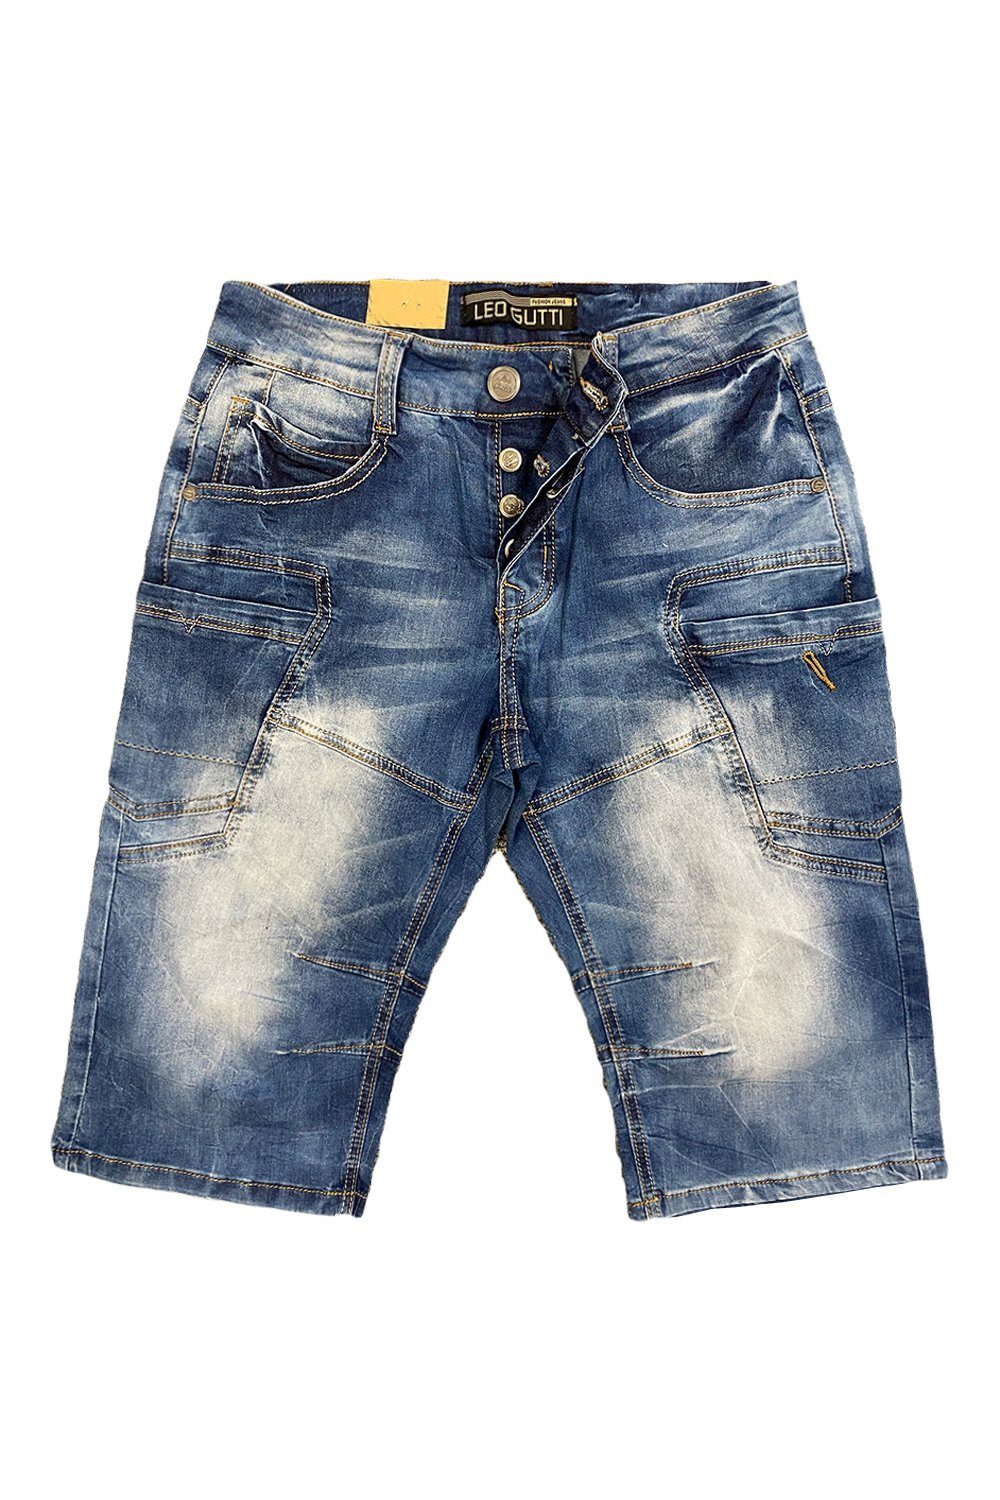 LEO GUTTI Jeansshorts Jeans Shorts Kurze Sommer Jeans Hose 5-Pocket (1-tlg) 3151 in Blau